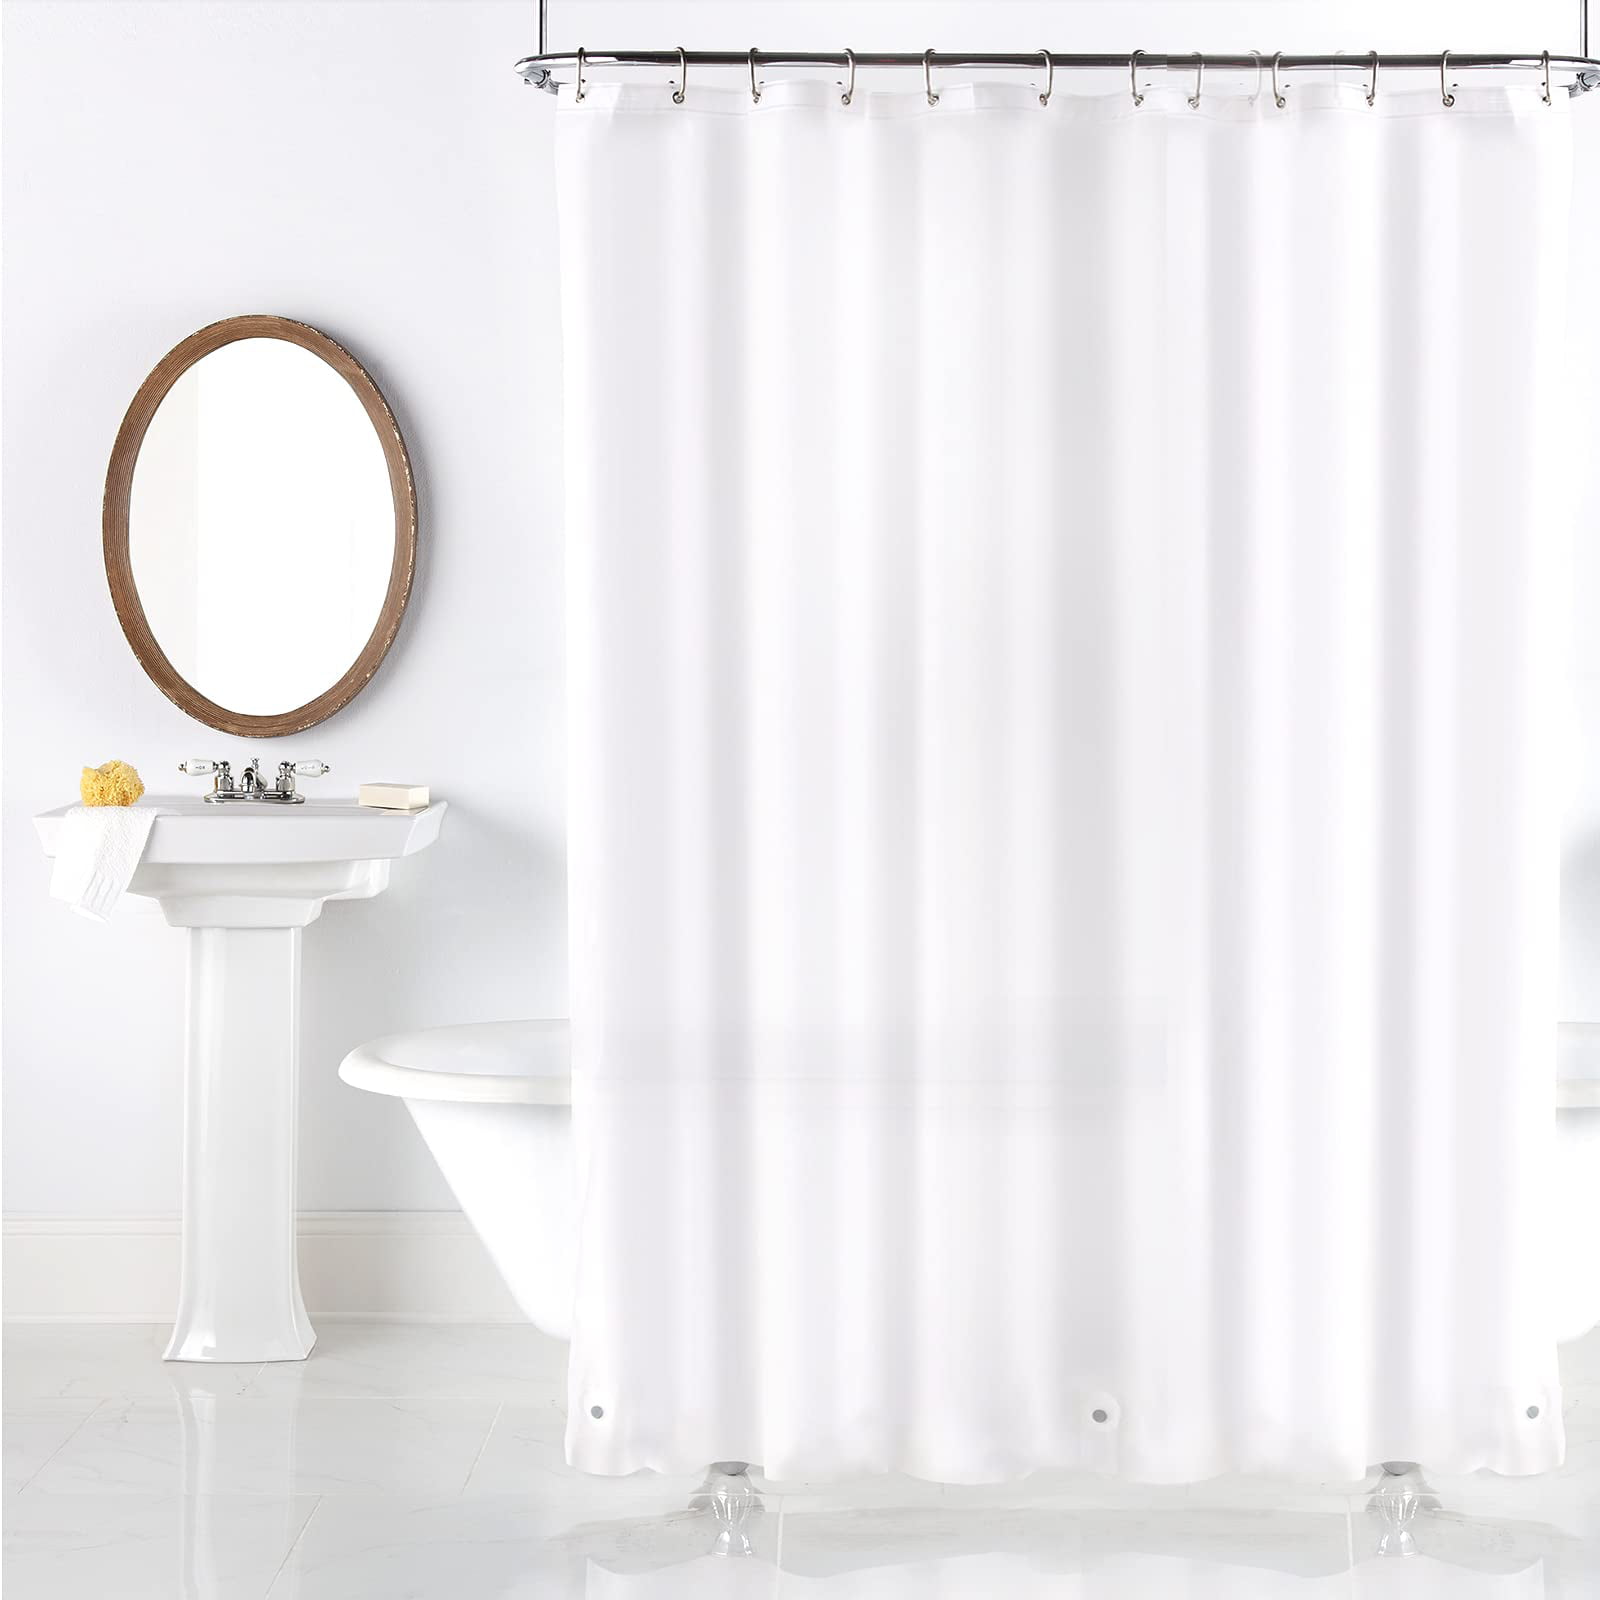 Rock Texture Shower Curtain Liner Waterproof Fabric & 12 Hooks Bath Mat 72x72" 